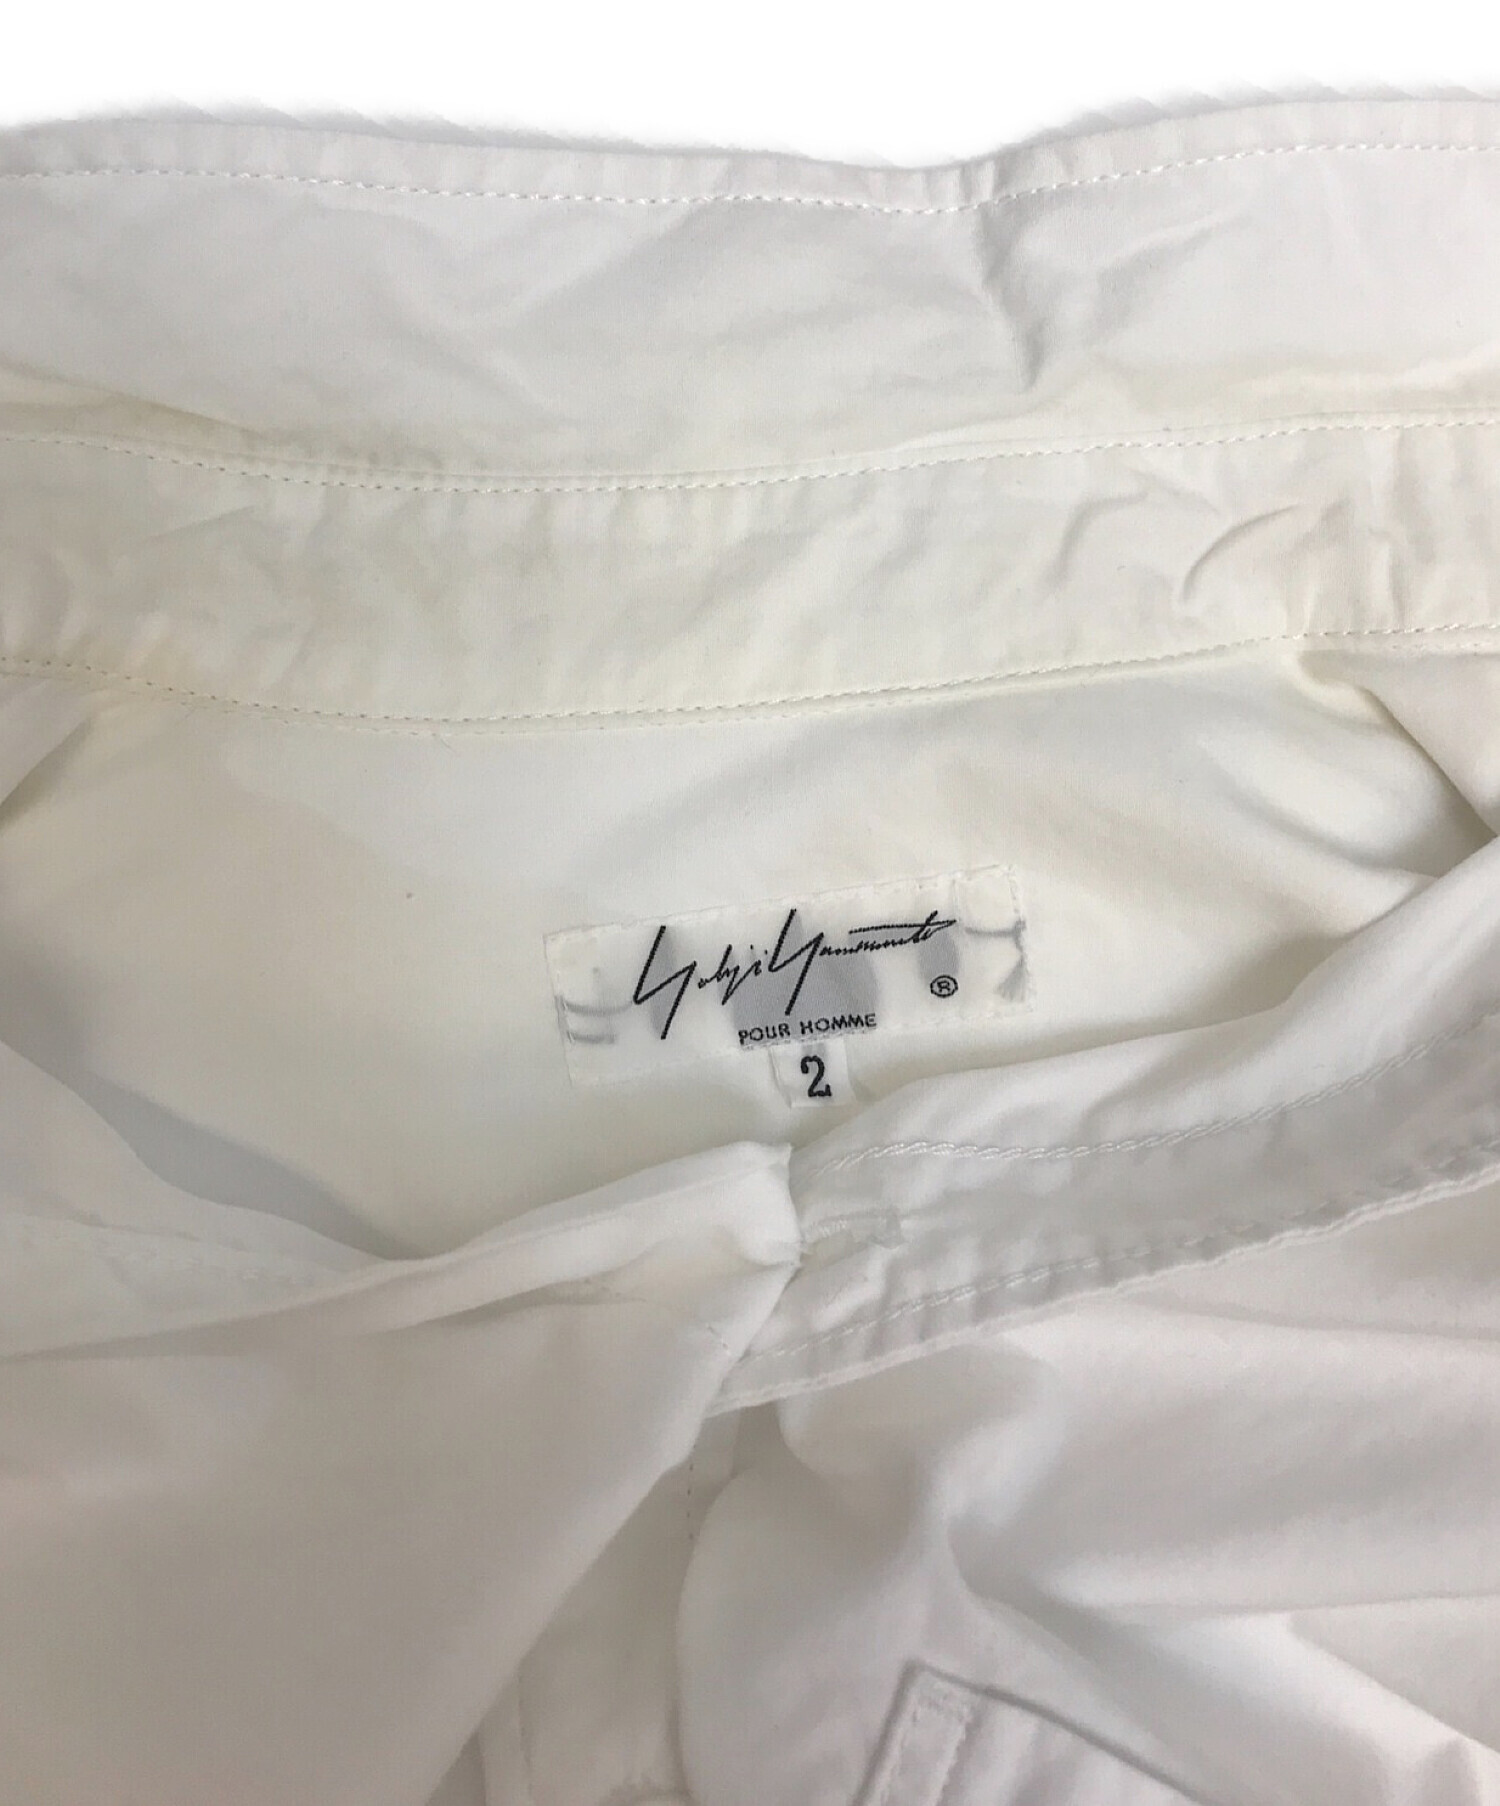 Yohji Yamamoto pour homme (ヨウジヤマモトプールオム) 台襟ロングカラー環縫いシャツ ホワイト サイズ:2